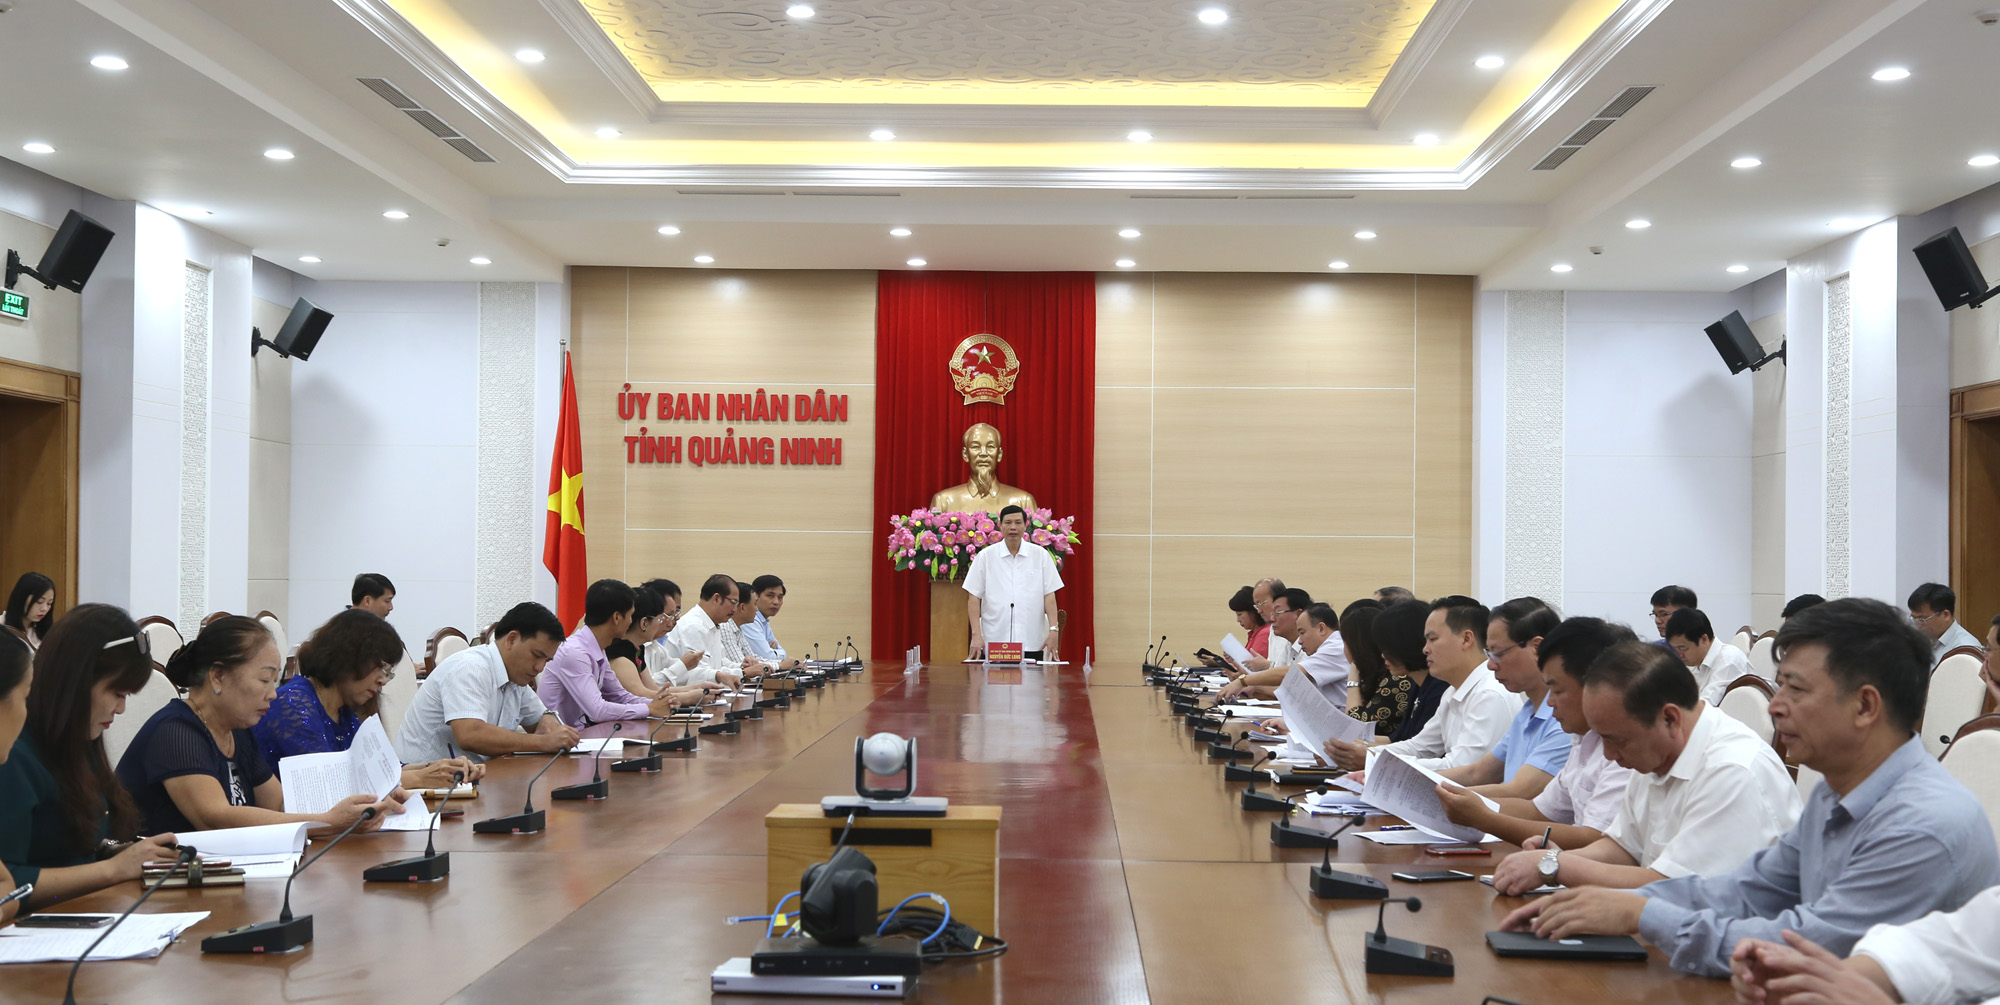 Đồng chí Nguyễn Đức Long, Phó Bí thư Tỉnh ủy, Chủ tịch UBND tỉnh, chủ trì hội nghị.